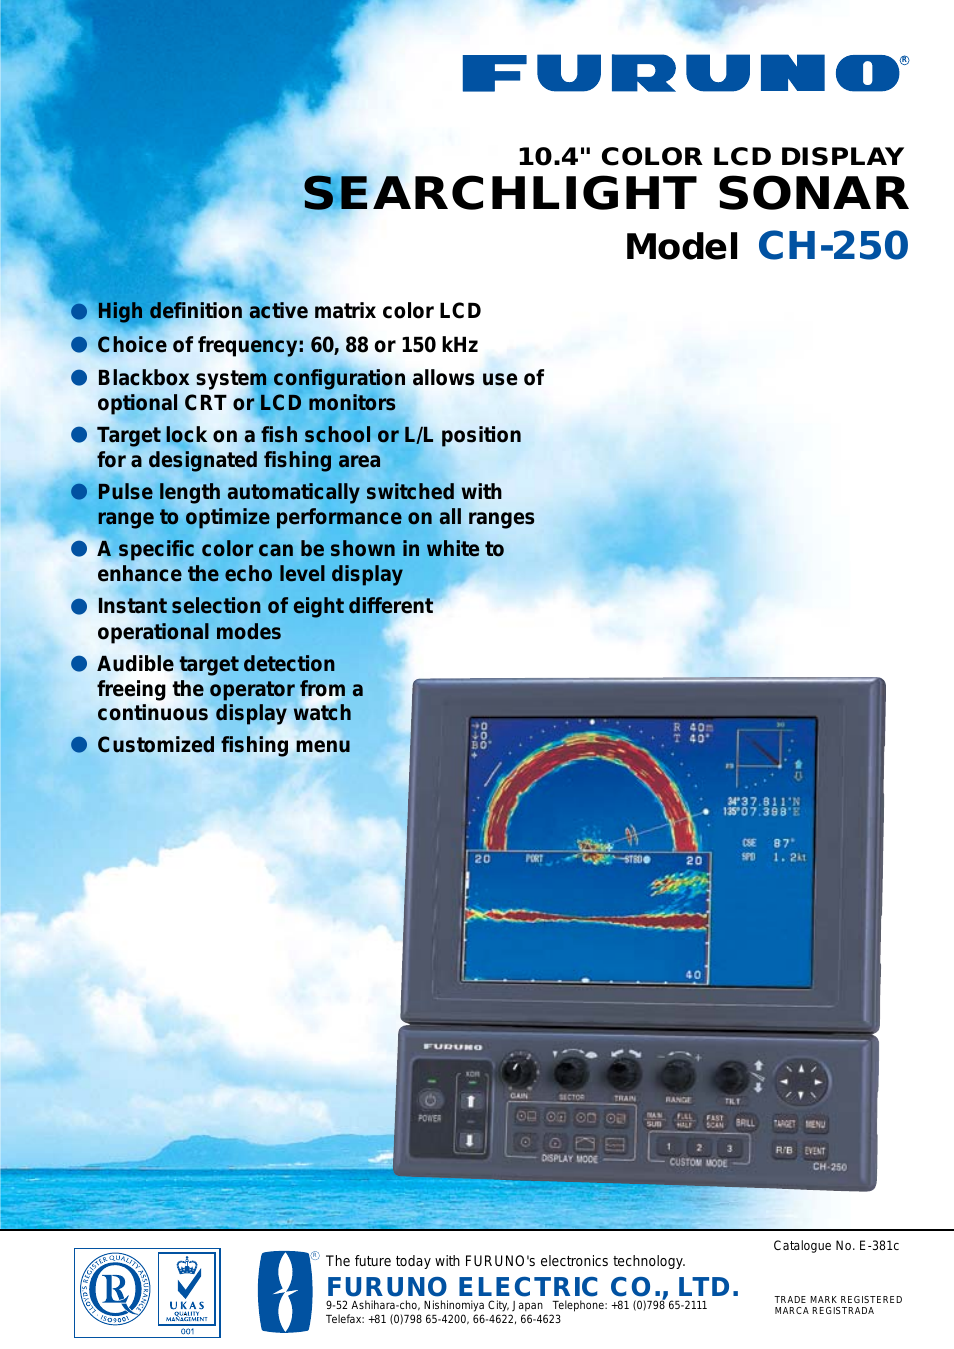 SEARCHLIGHT SONAR CH-250